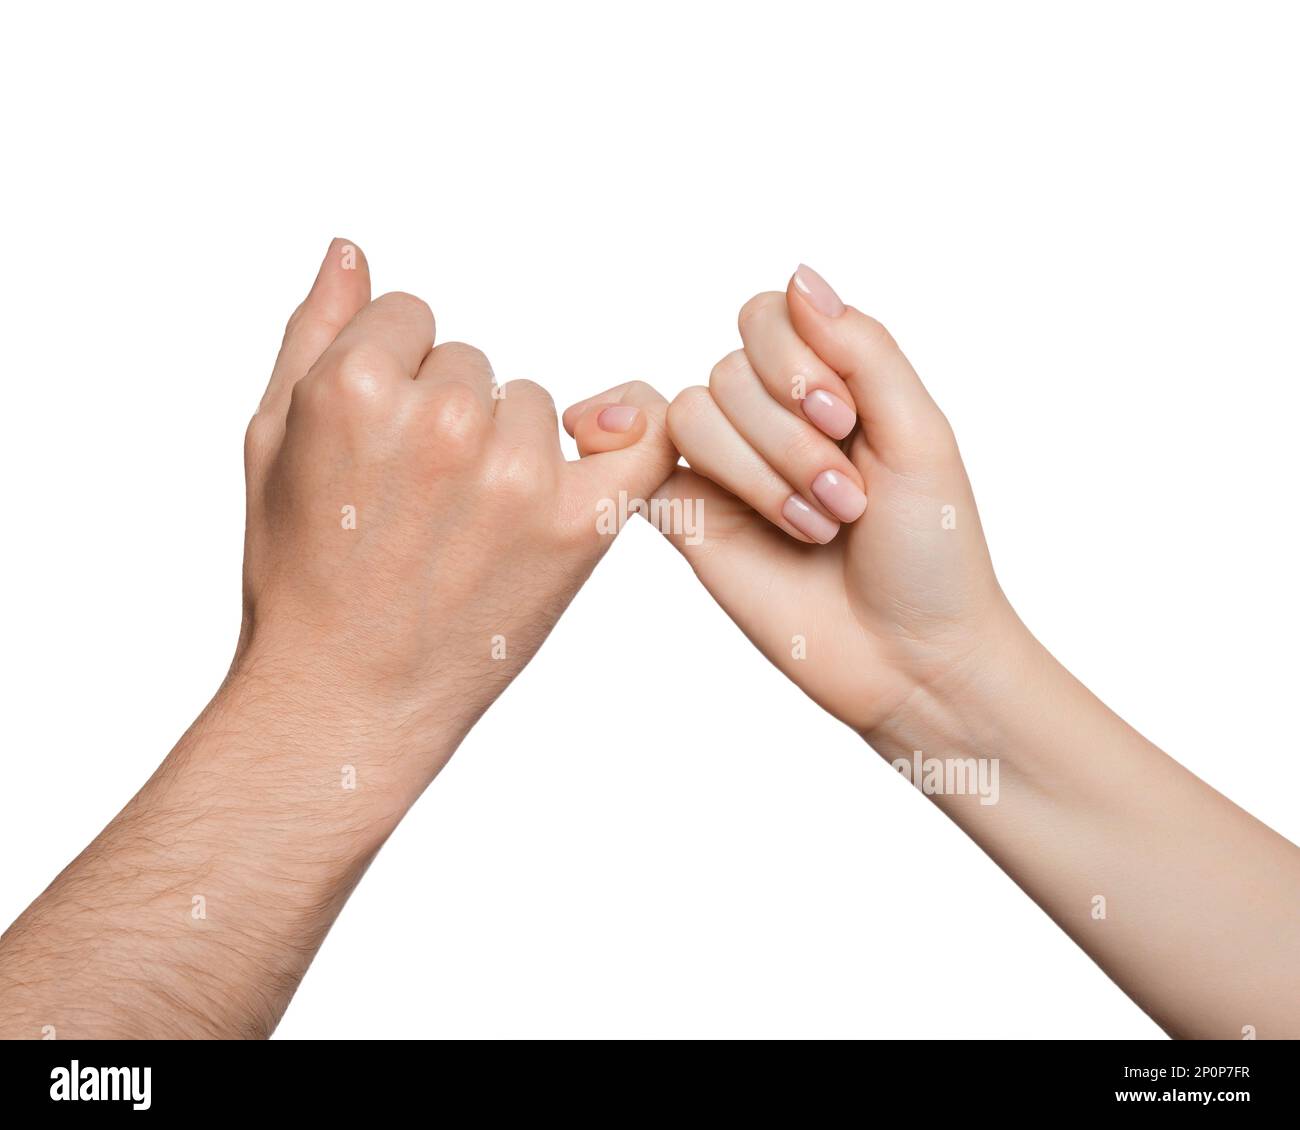 Die Hände halten sich mit kleinen Fingern fest, isoliert Stockfoto